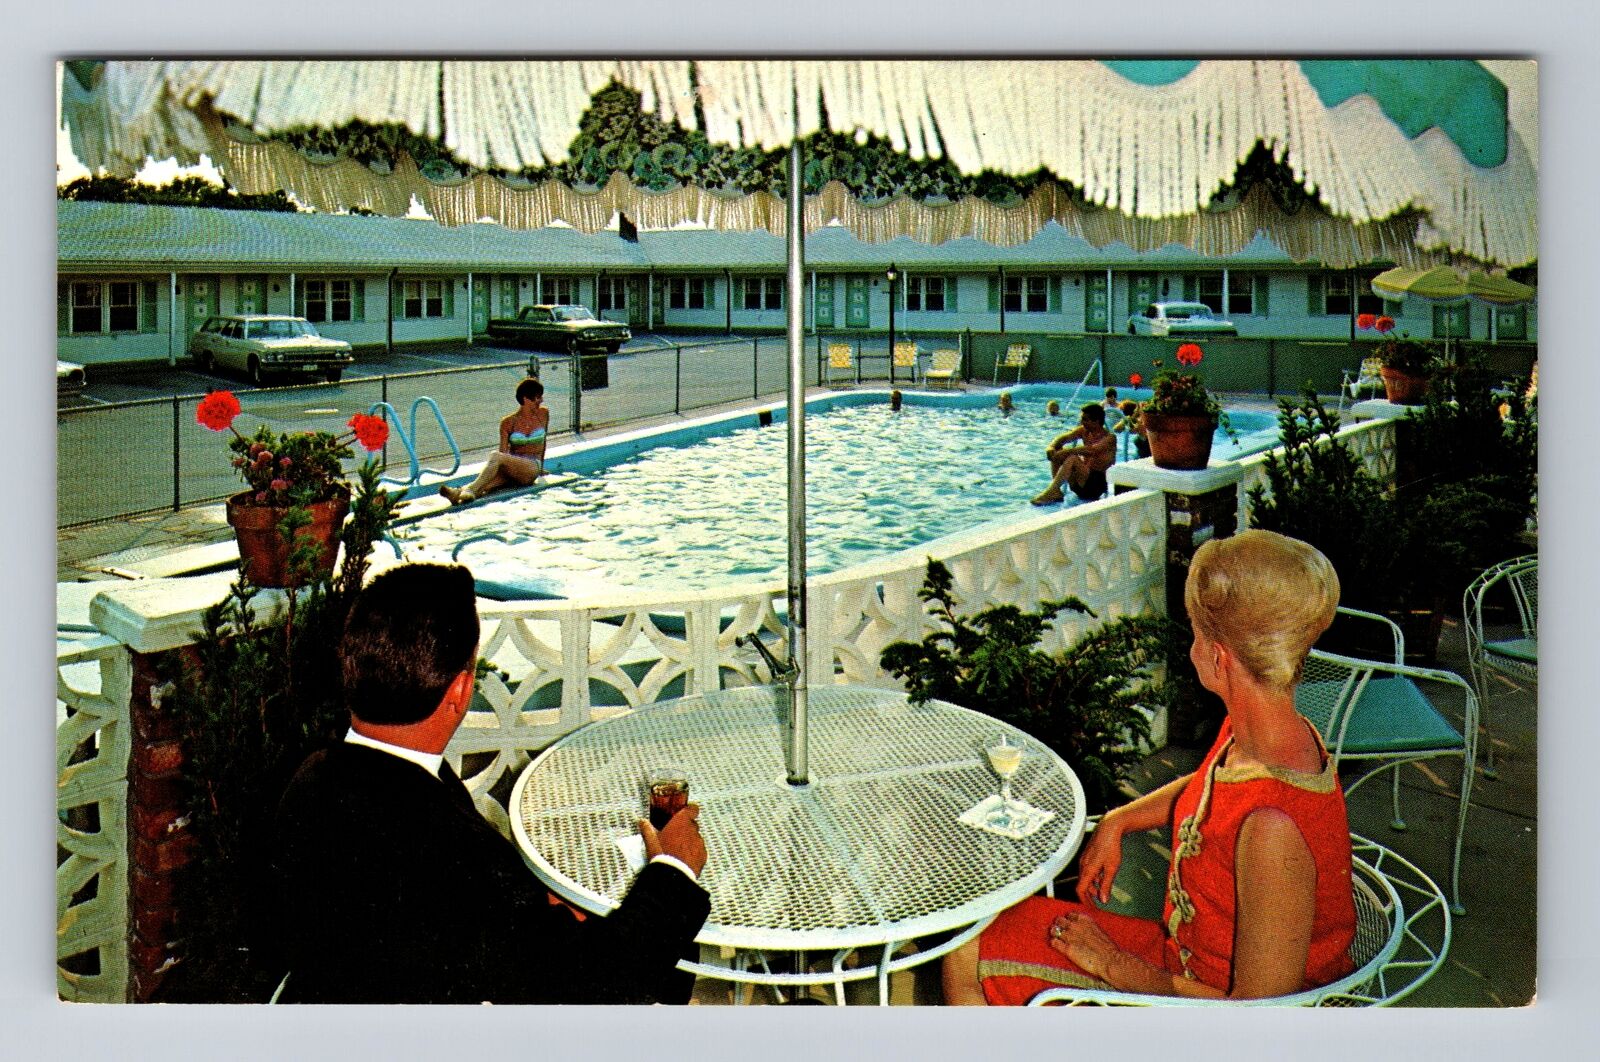 Seekonk MA-Massachusetts, Town N Country Motel Pool Advertising Vintage Postcard